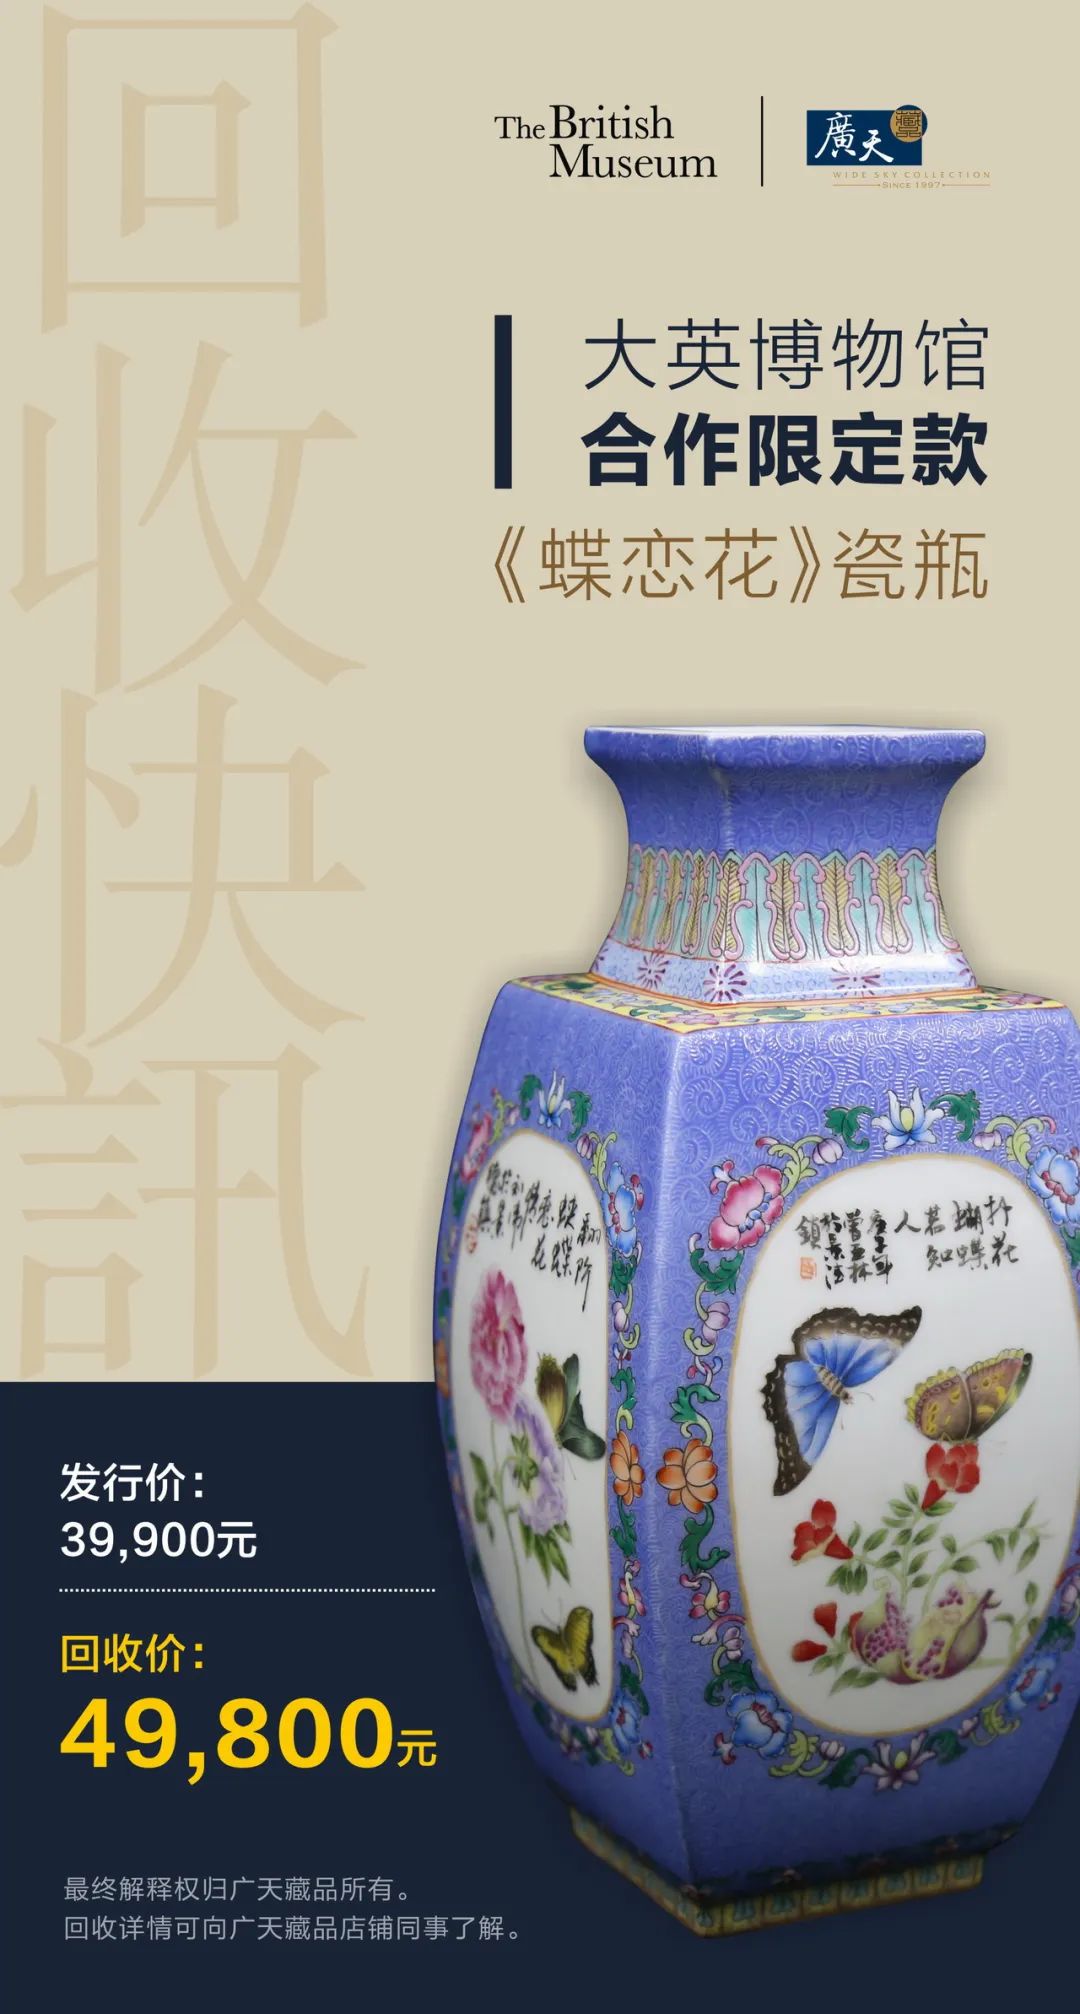 广天藏品25年来首次！溢价1万全球回购大英博物馆合作限定款《蝶恋花》瓷瓶。